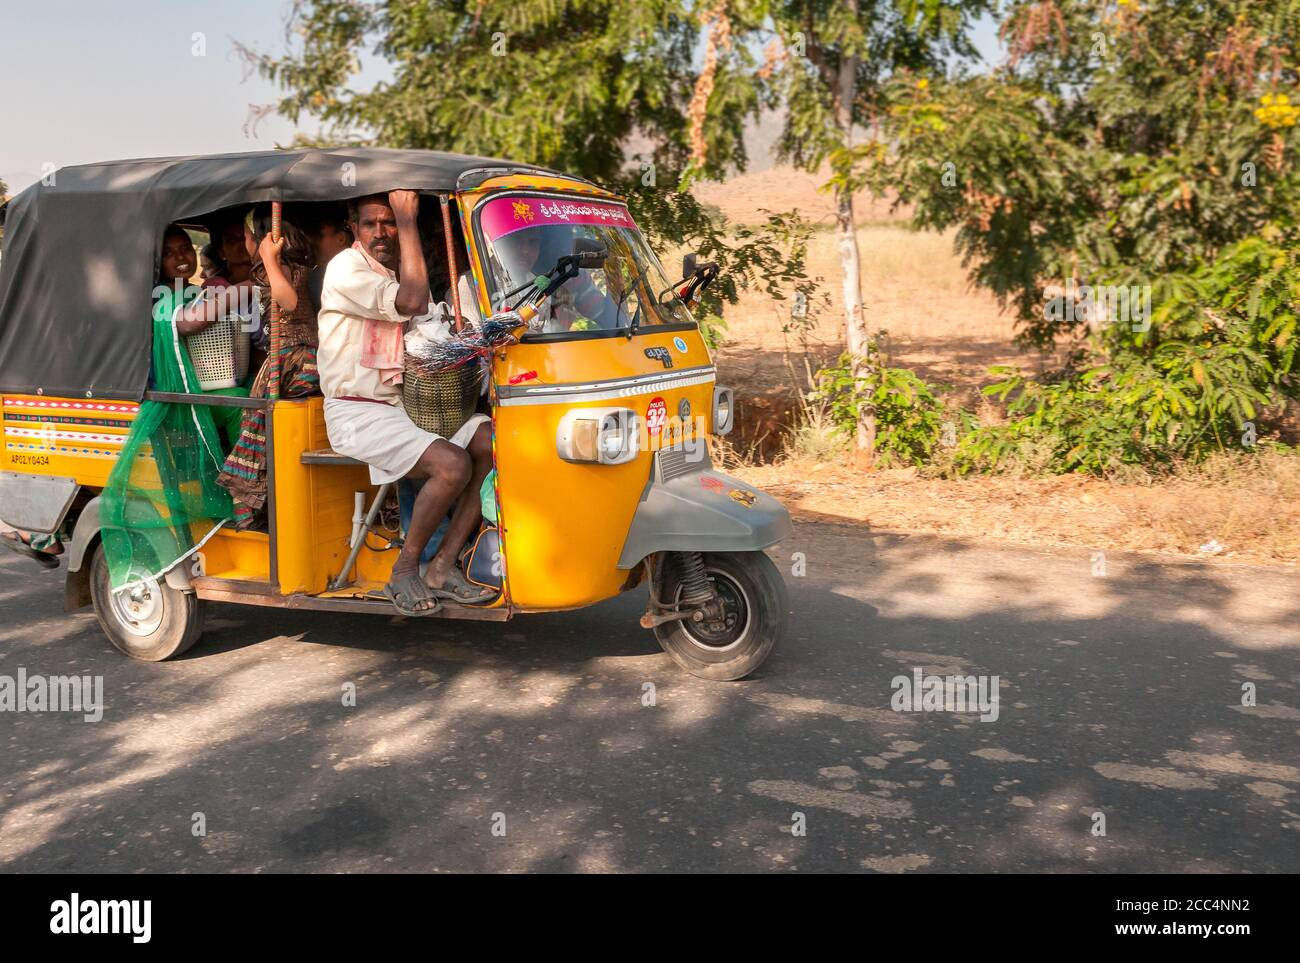 Puttaparthi, Andhra Pradesh, Inde - 12 janvier 2013 : les Indiens voyagent en taxi en pousse-pousse le long de la route du village de Puttaparthi, Inde Banque D'Images